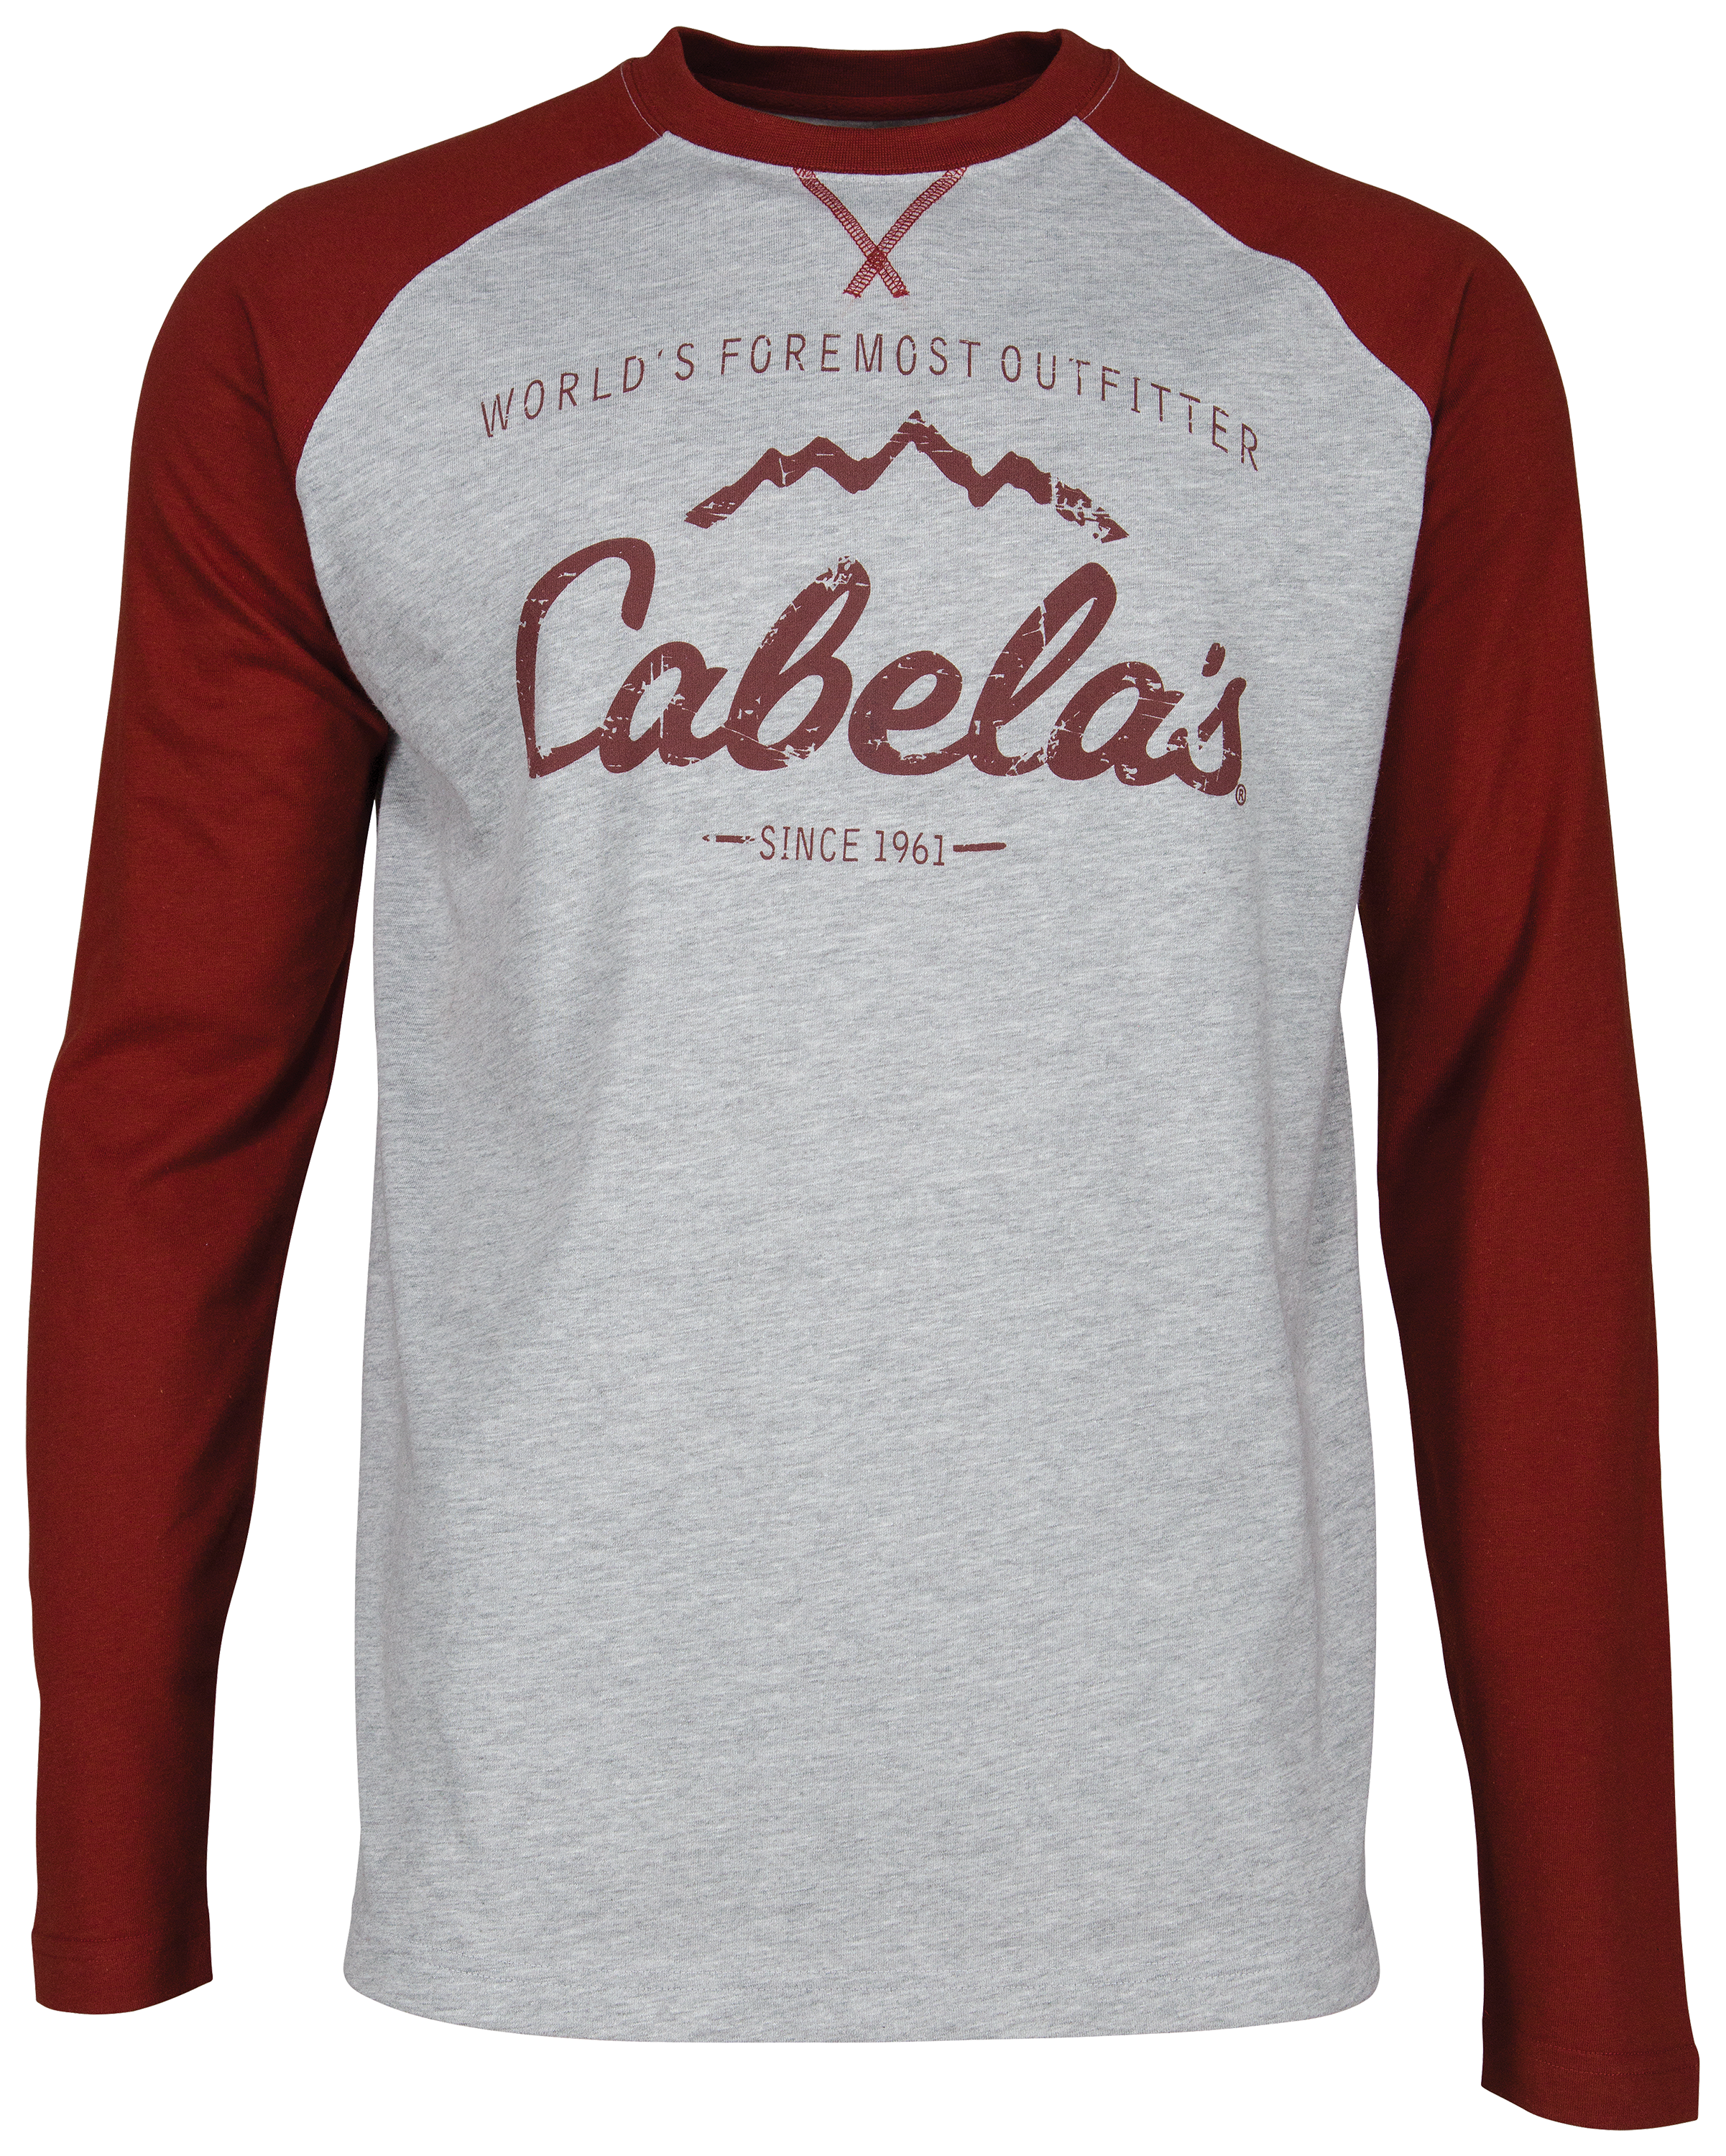 Cabela's Long-Sleeve Performance Shirt for Men